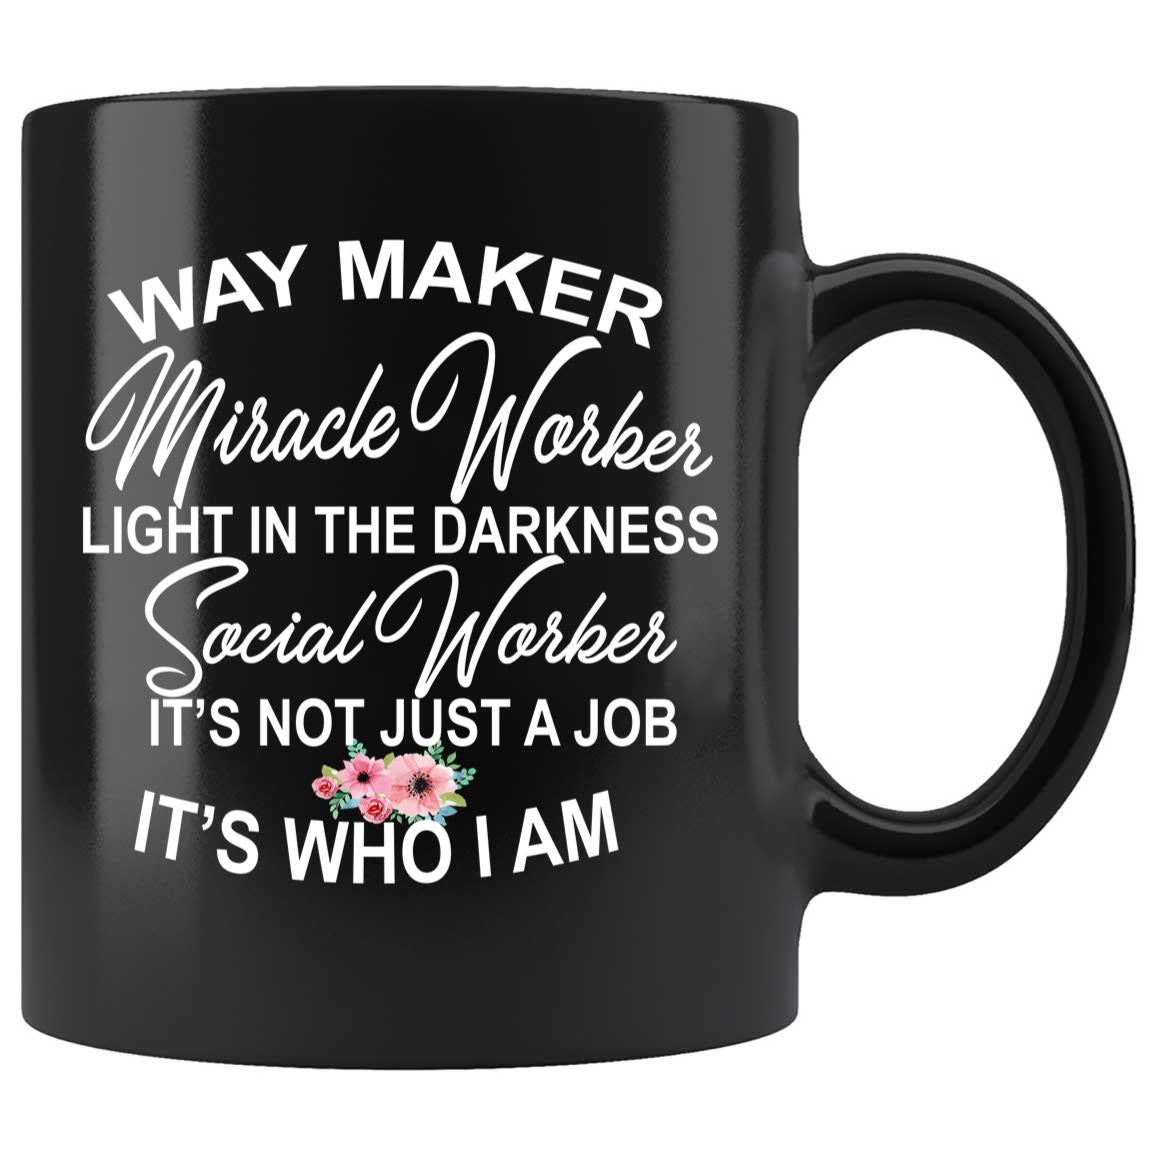 Skitongifts Coffee Mug Funny Ceramic Novelty Way Maker Miracle Worker